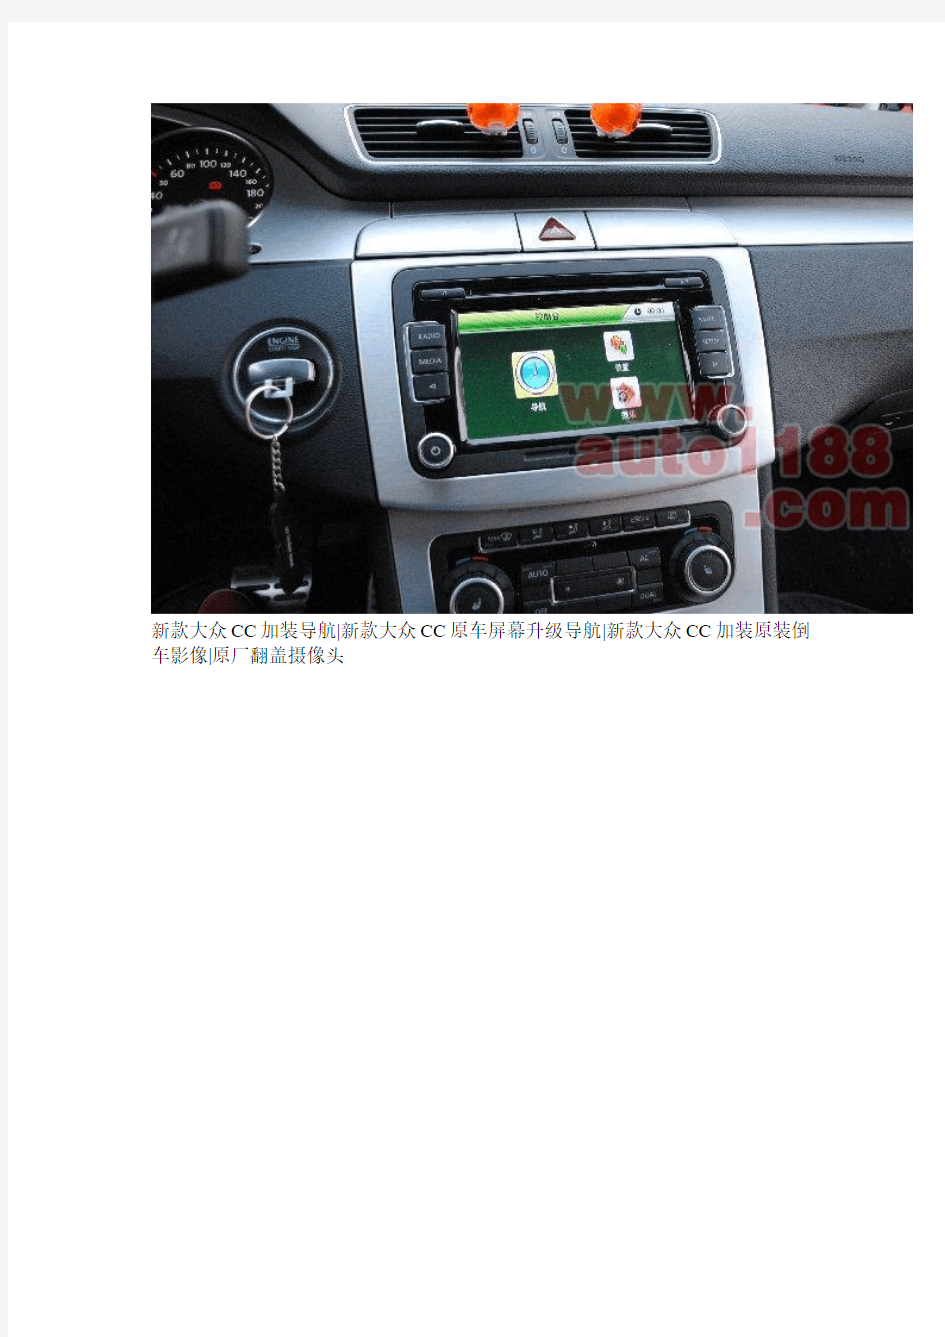 大众CC原车屏幕升级导航,加装原装倒车影像摄像头